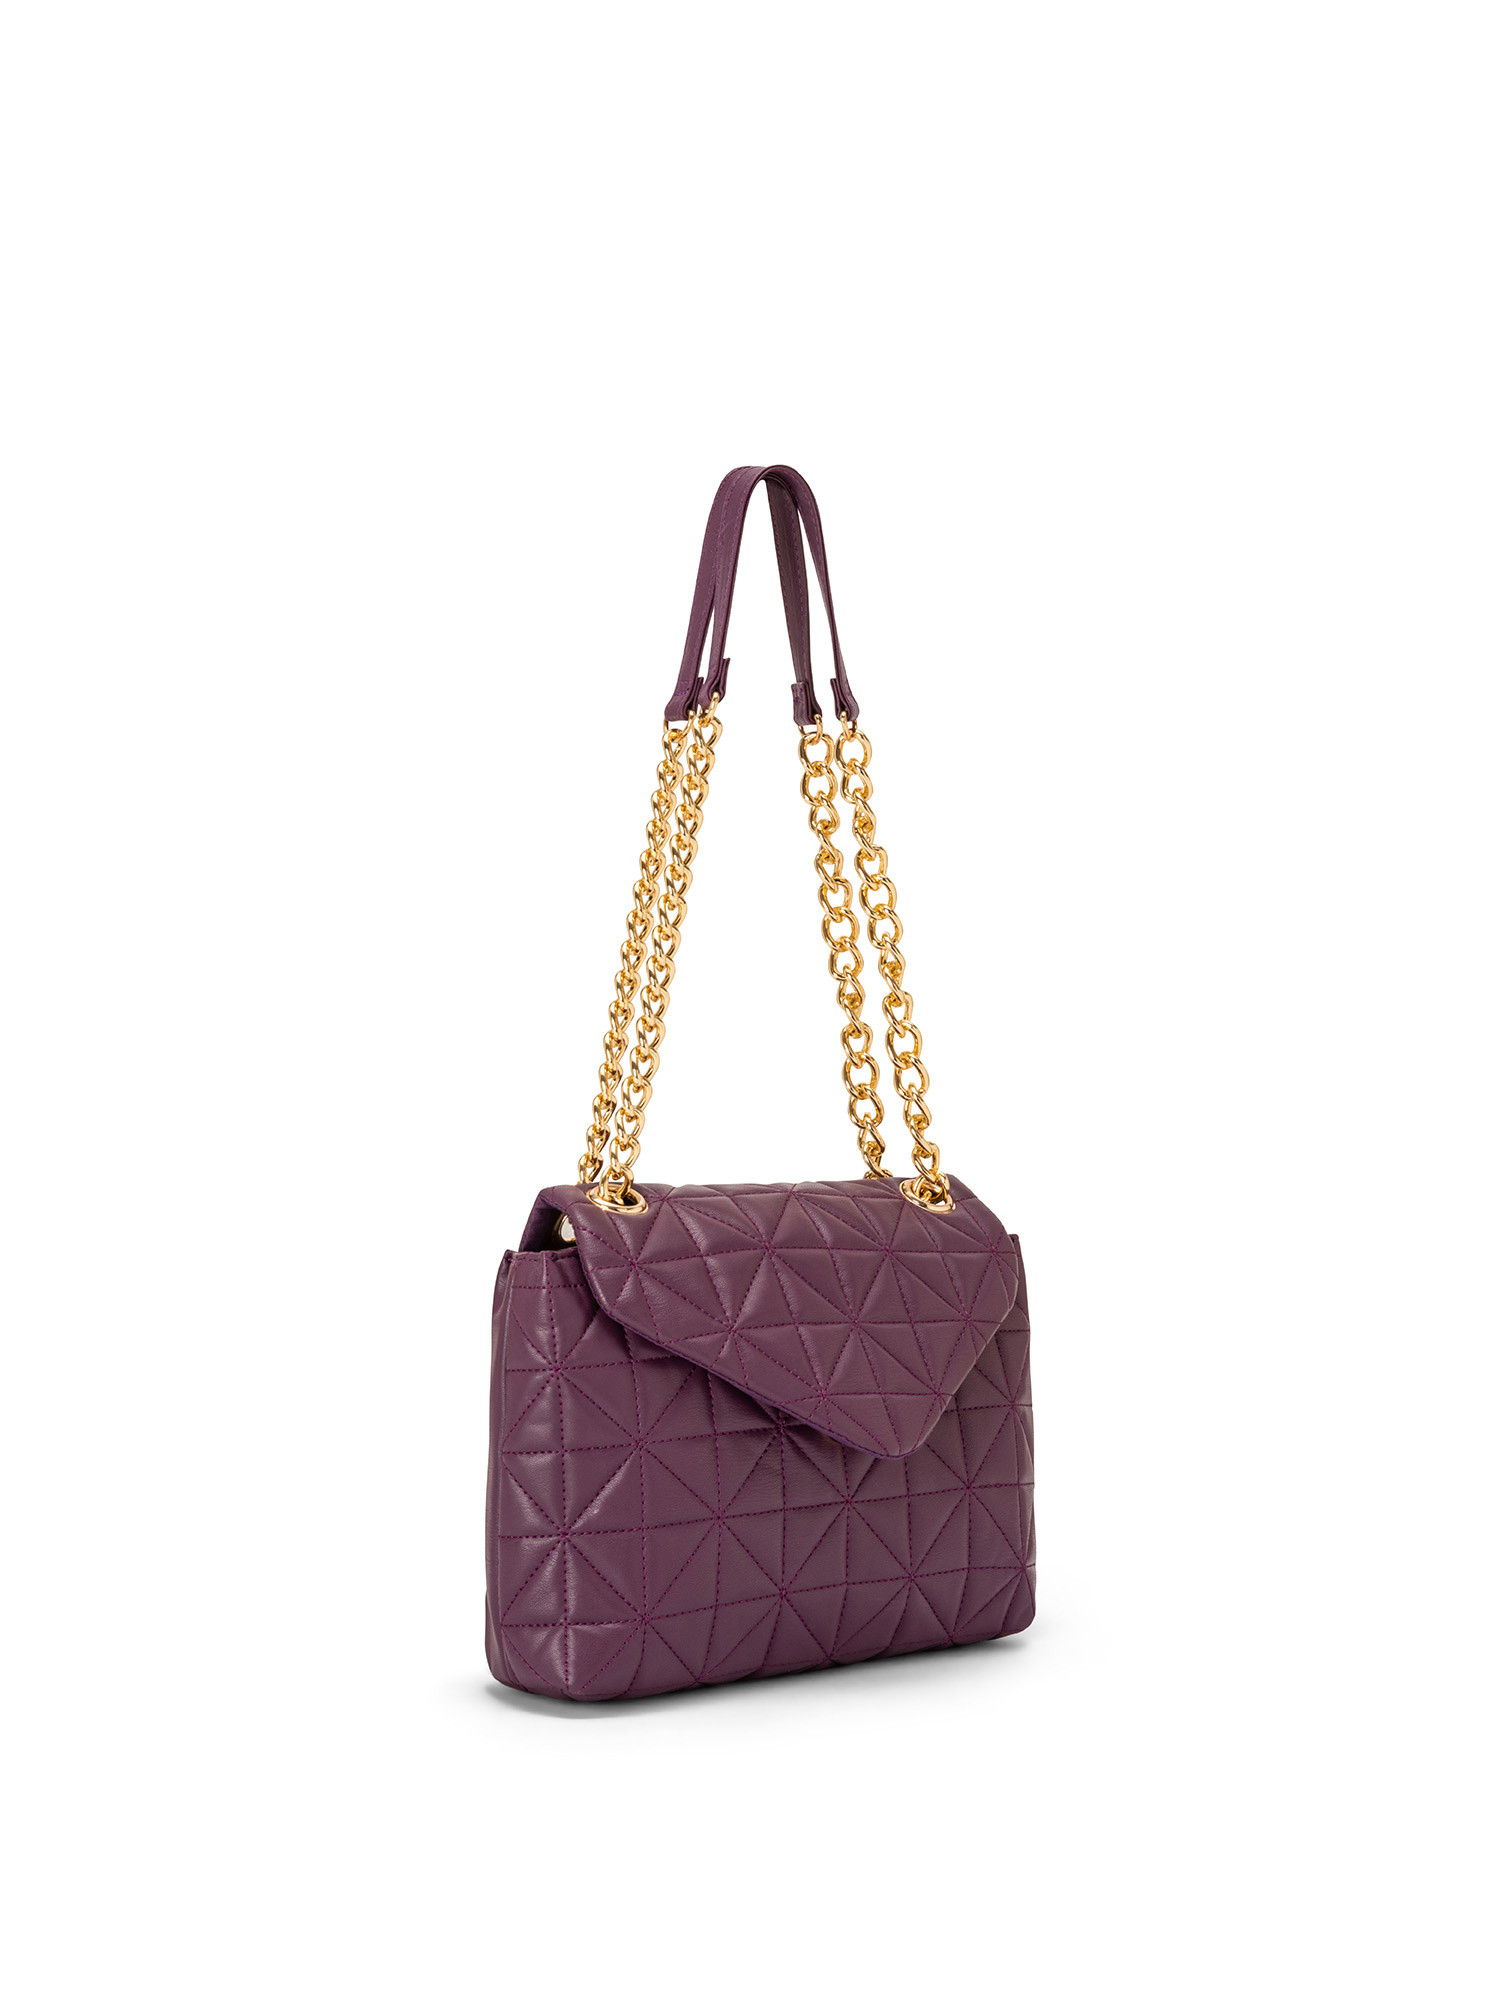 Koan - Shoulder bag with motif, Purple, large image number 1